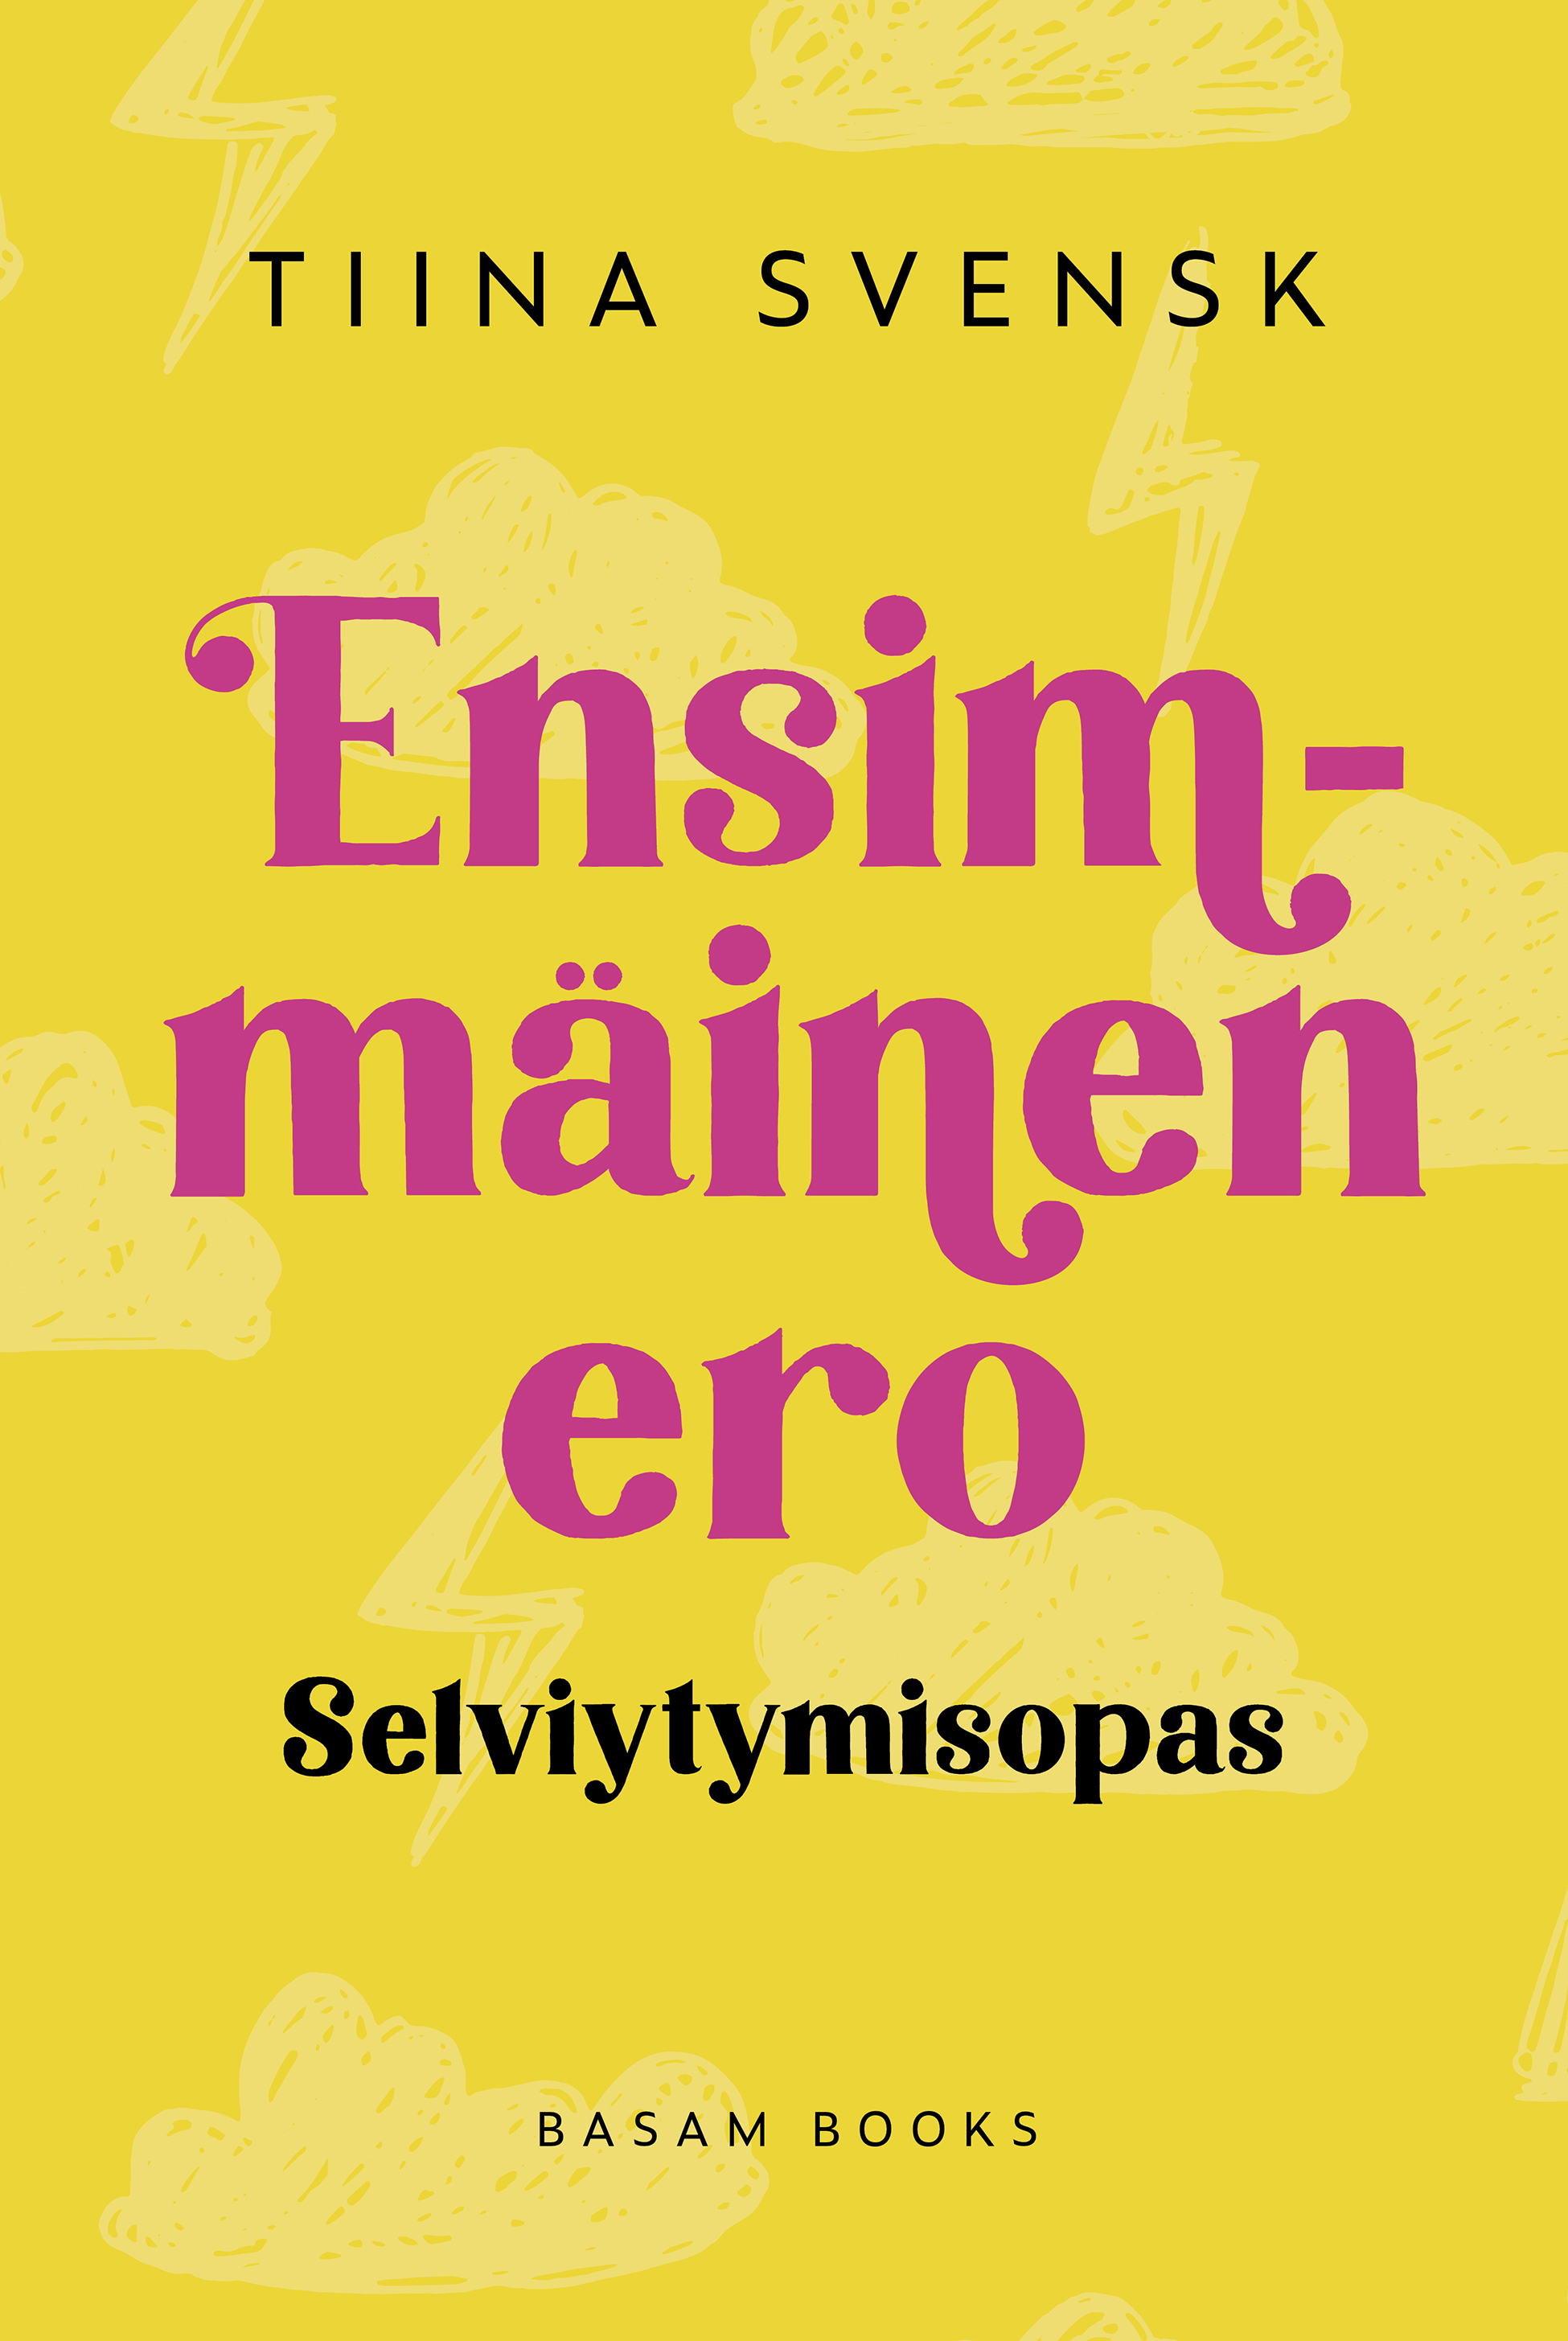 Svensk, Tiina - Ensimmäinen ero, e-bok